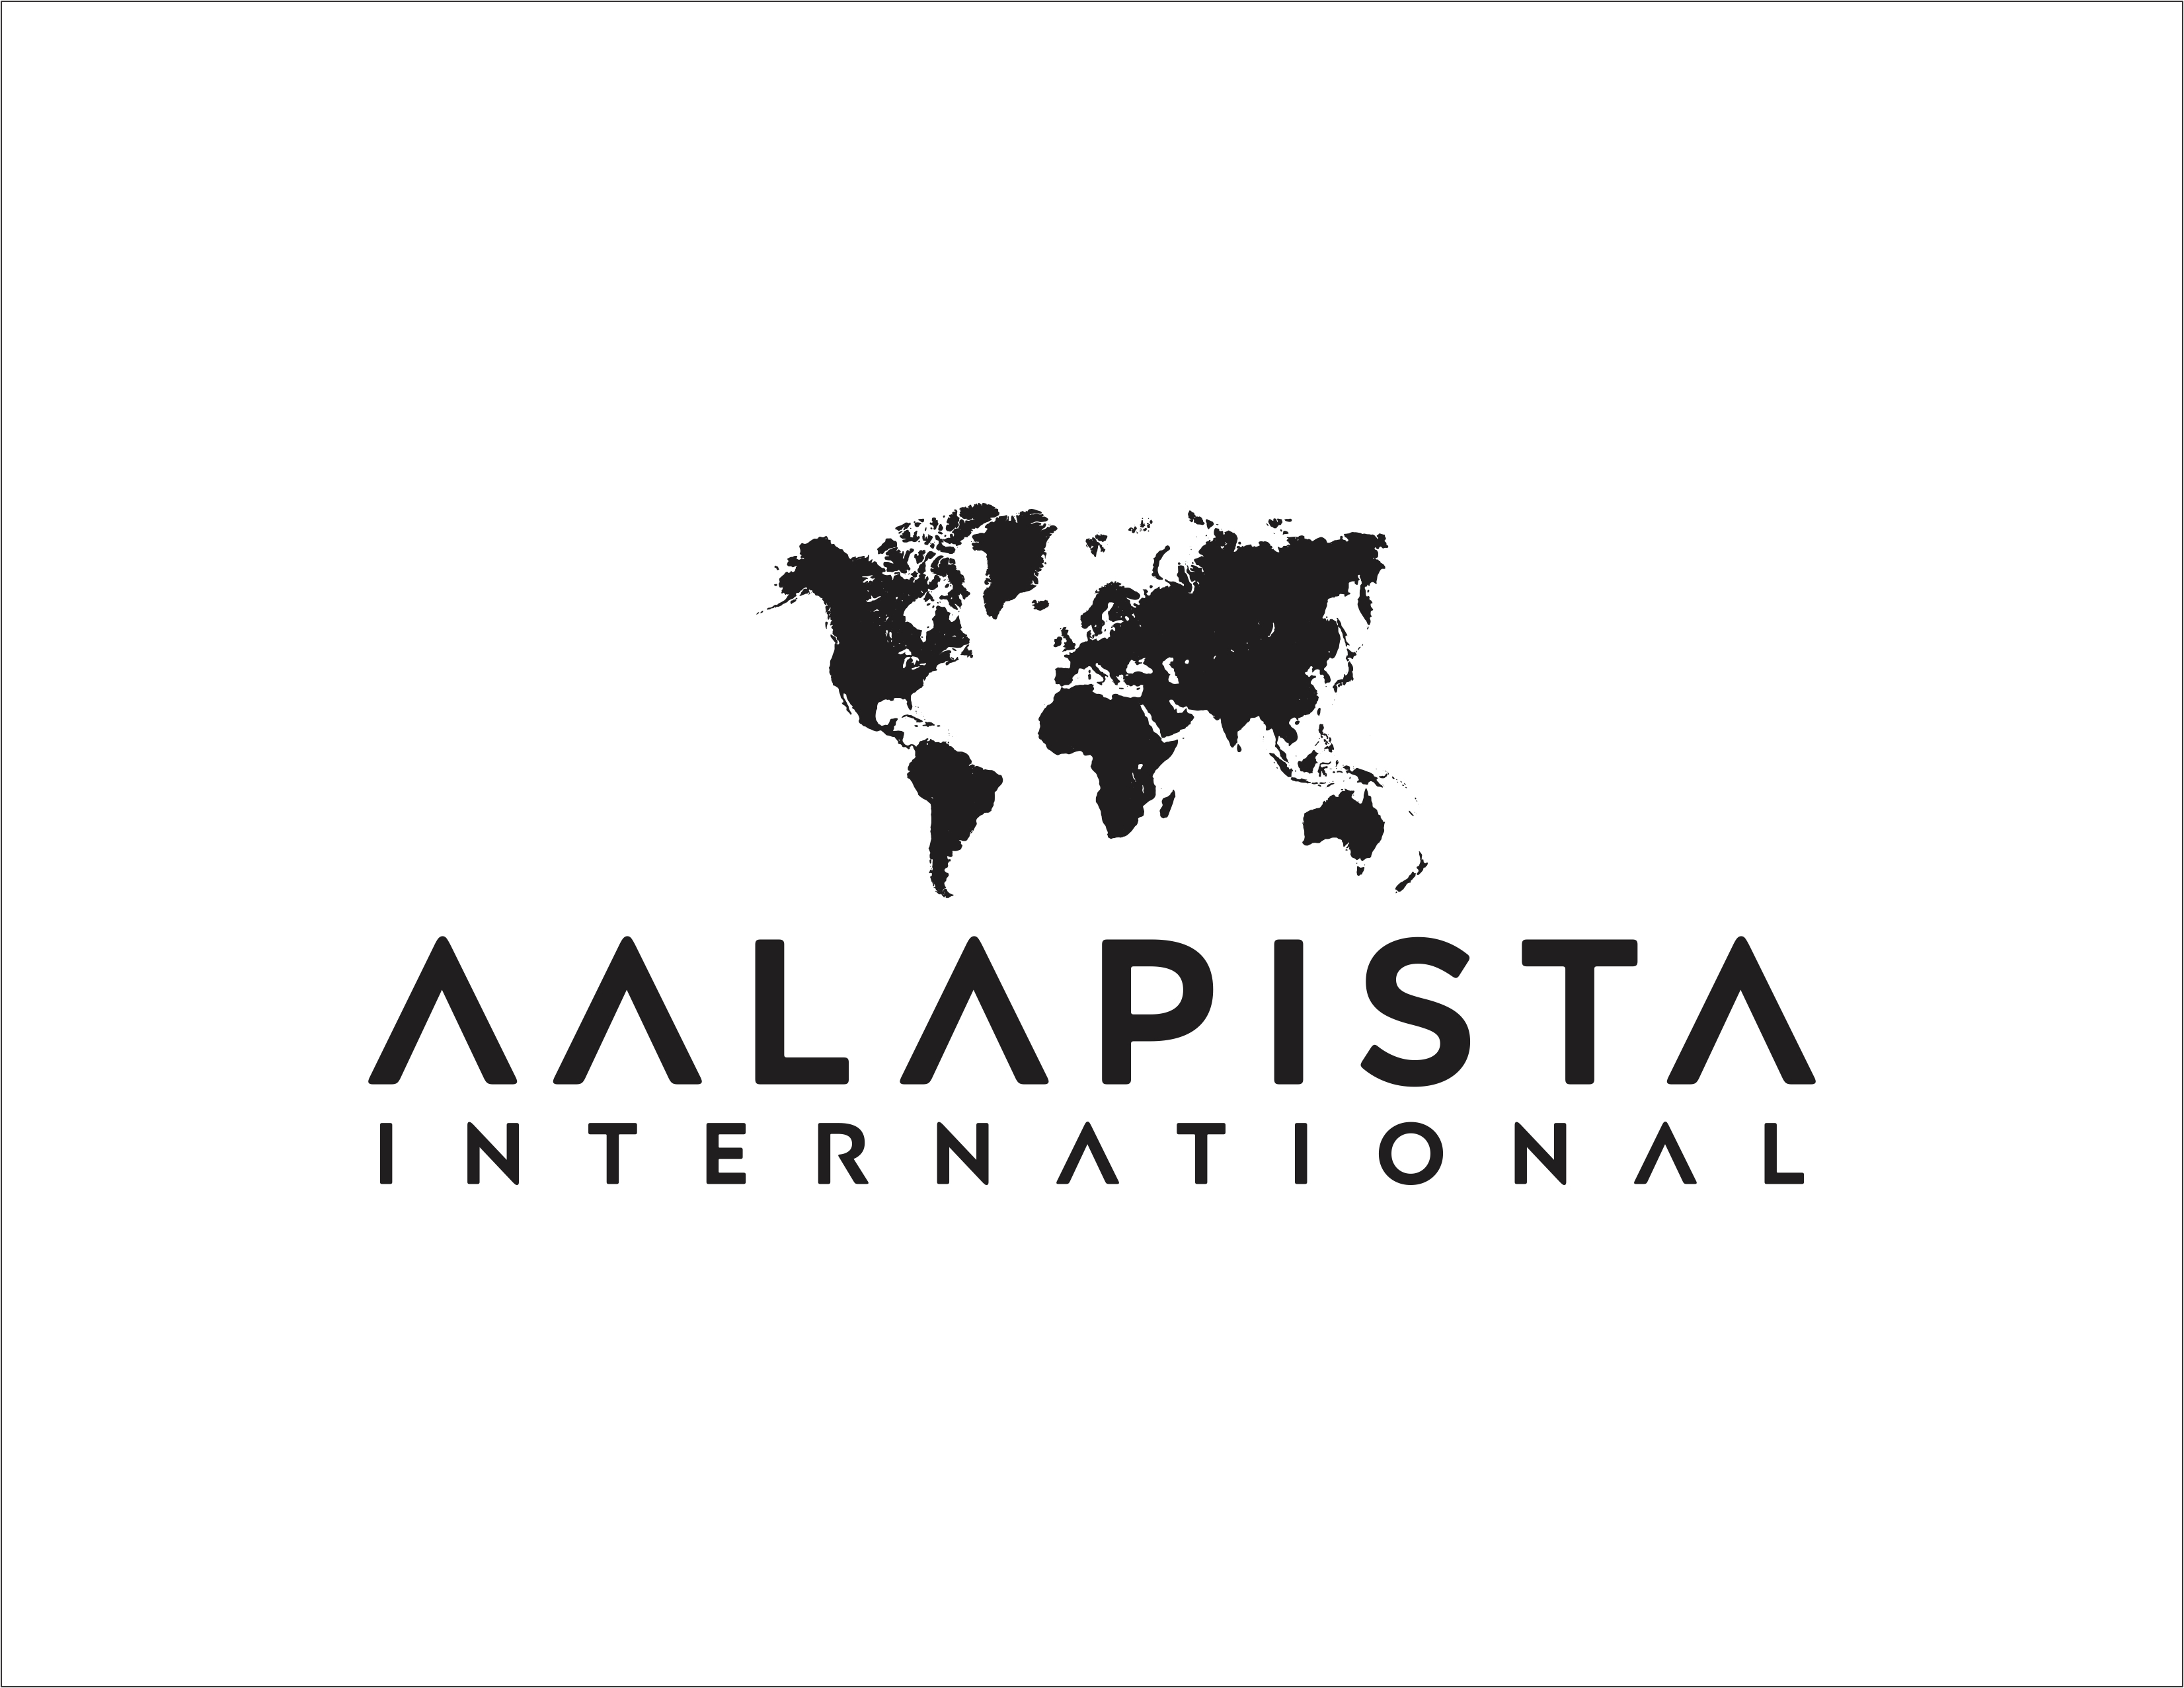 AALAPISTA INTERNATIONAL